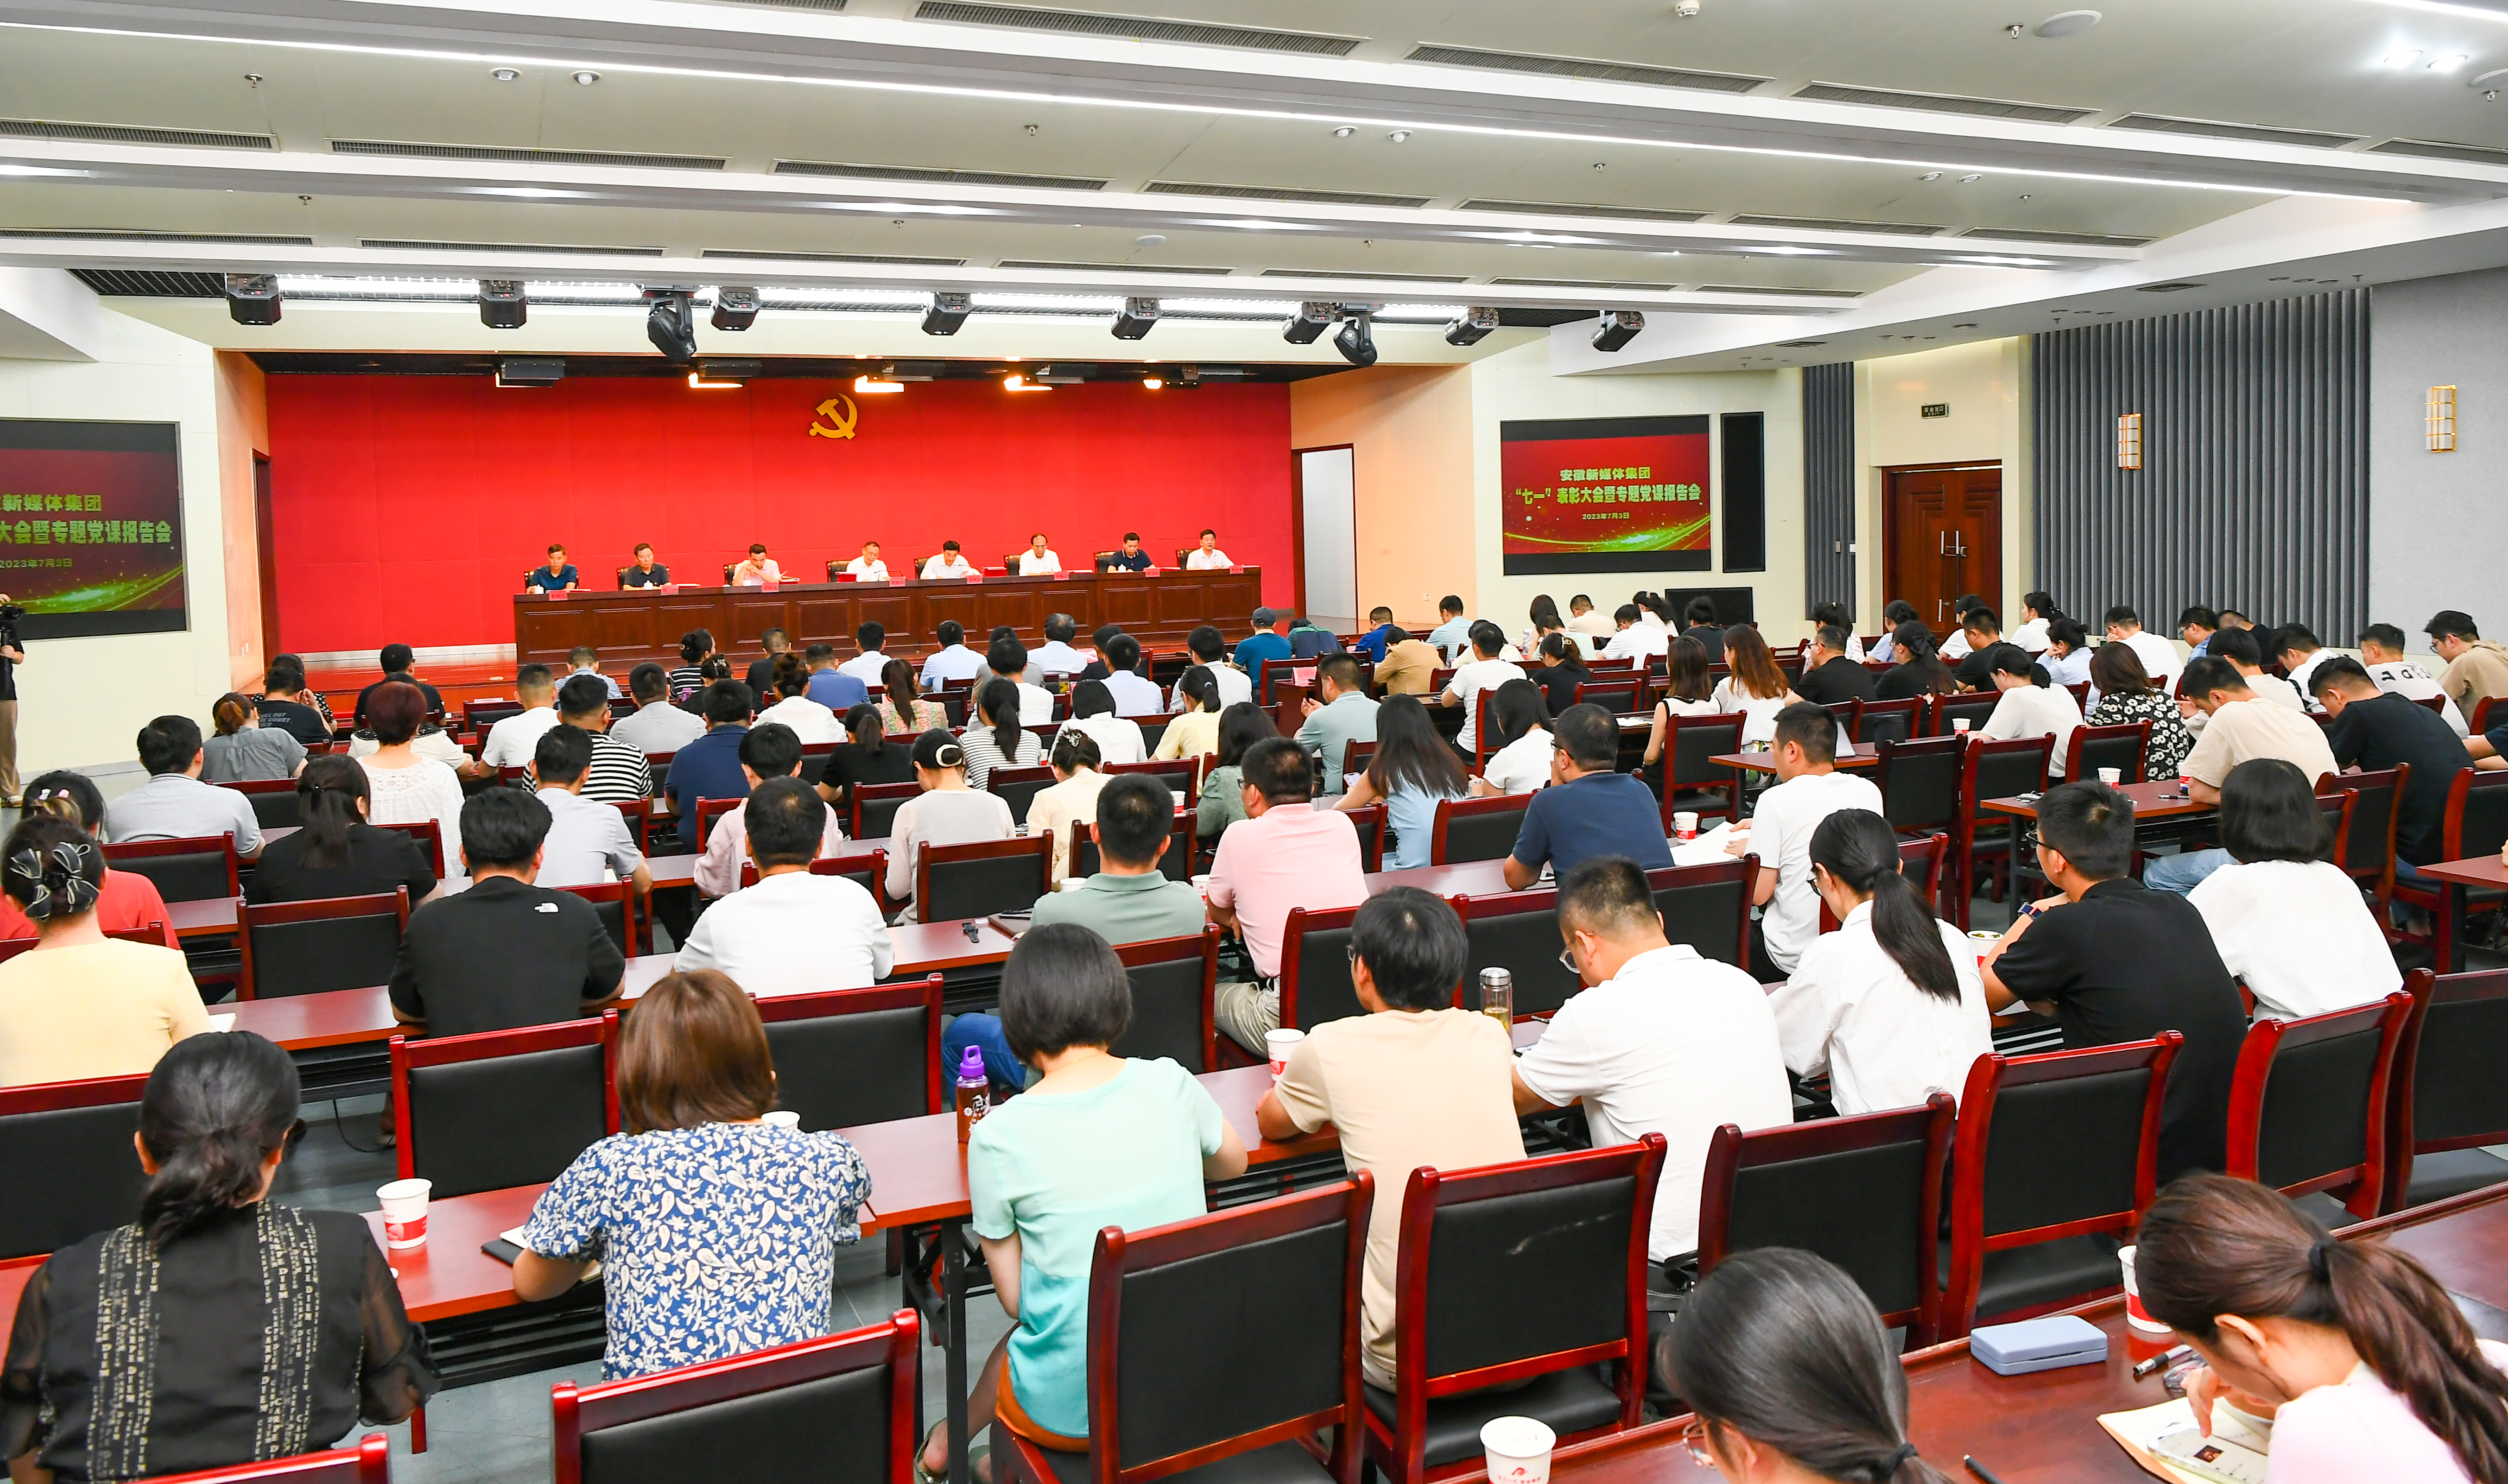 安徽新媒體集團舉行“七一”表彰大會暨專題黨課報告會